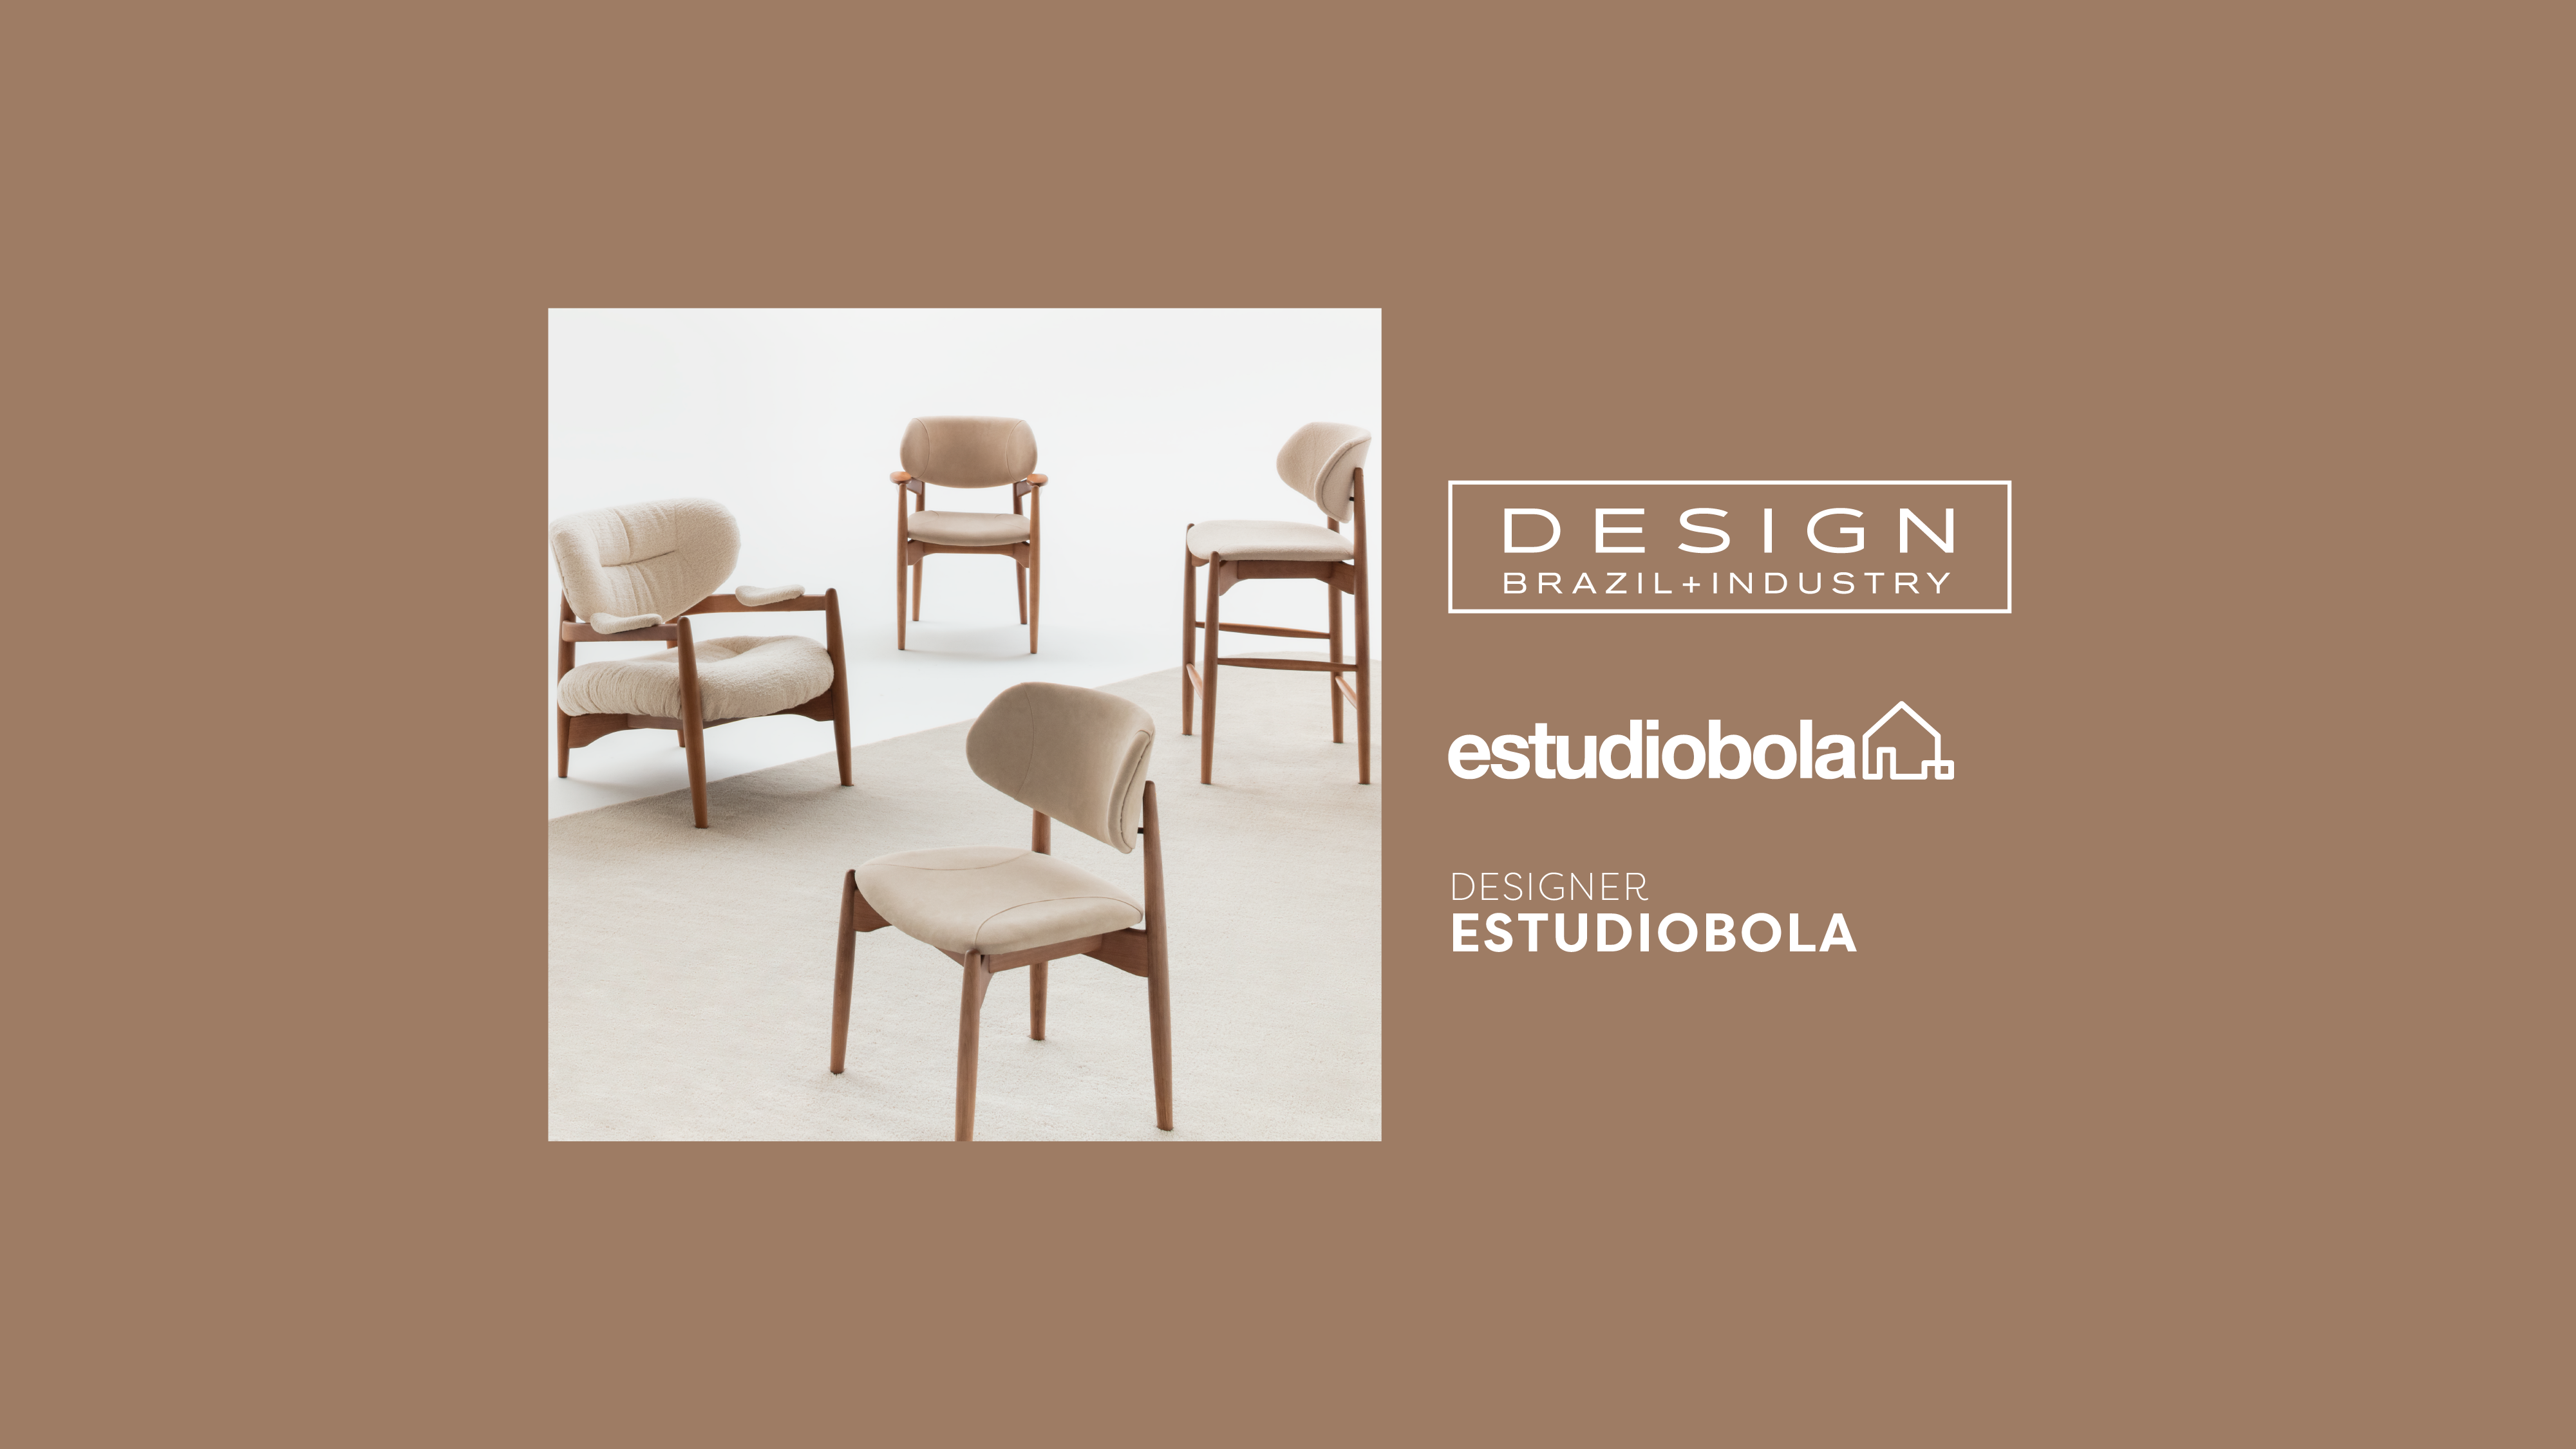 Linha Acácia do estudiobola combina inovação e tradição no Design Brasil + Indústria